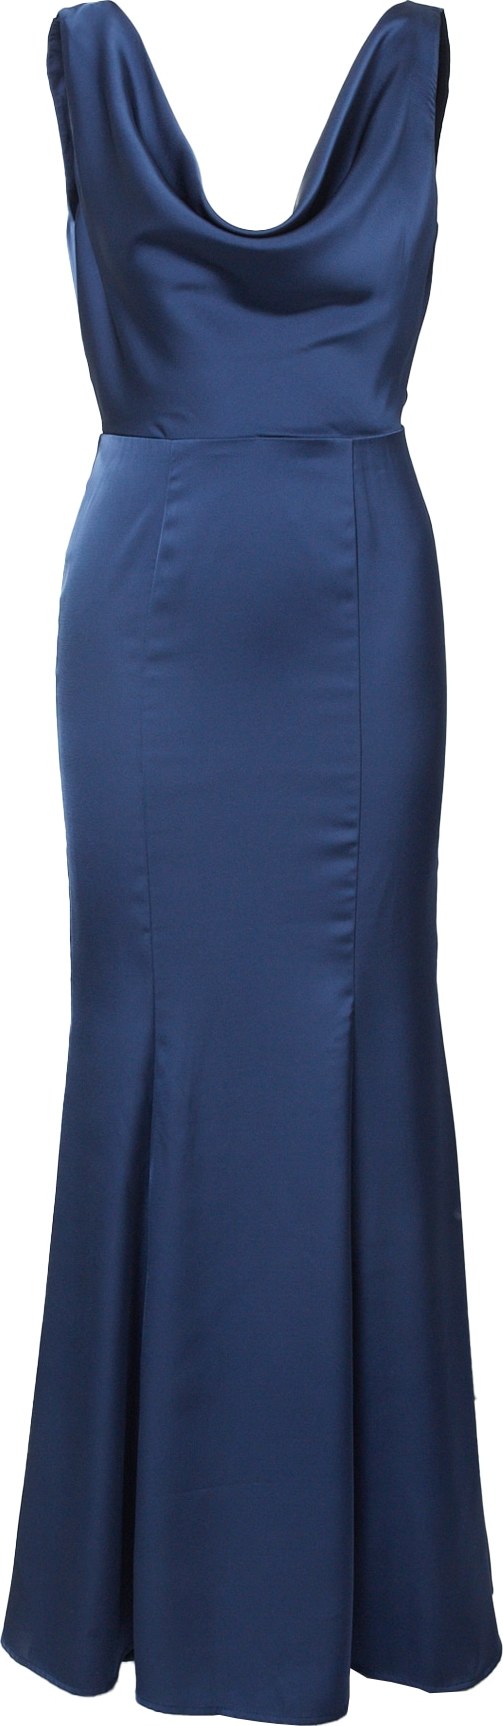 Jarlo Společenské šaty 'Laura' enciánová modrá